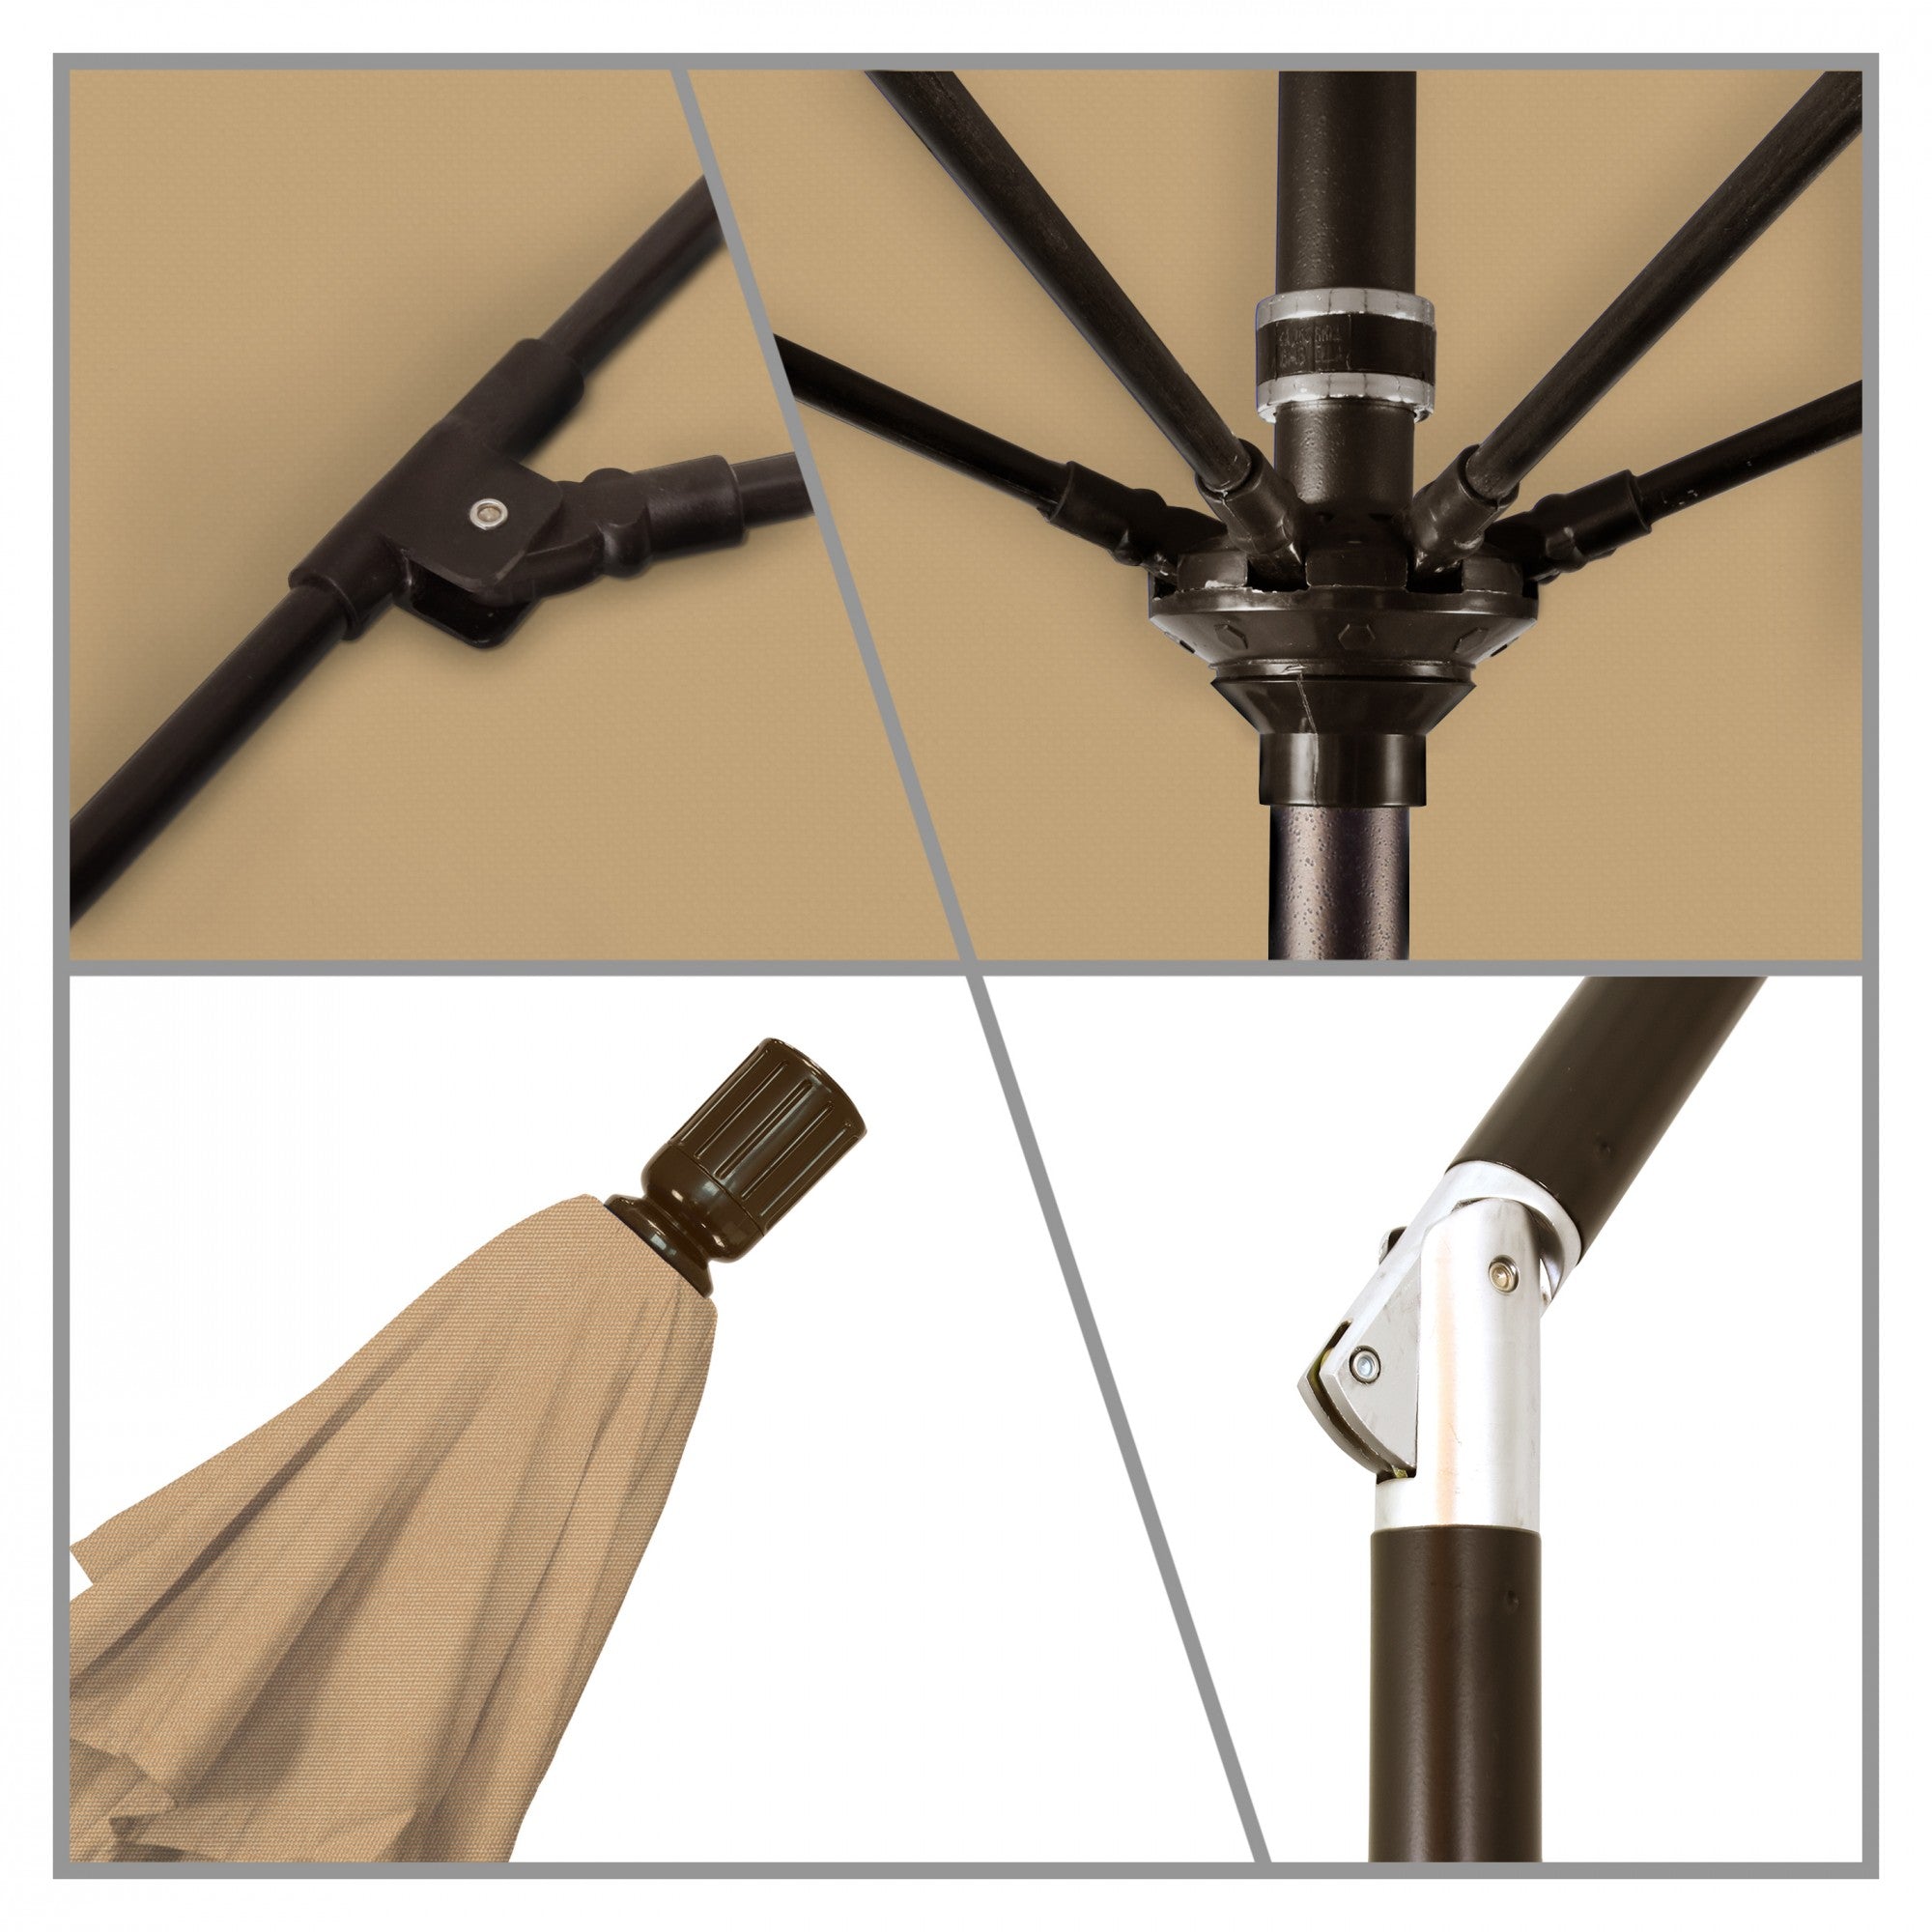 California Umbrella - 9' - Patio Umbrella Umbrella - Aluminum Pole - Champagne - Olefin - GSCUF908117-F67